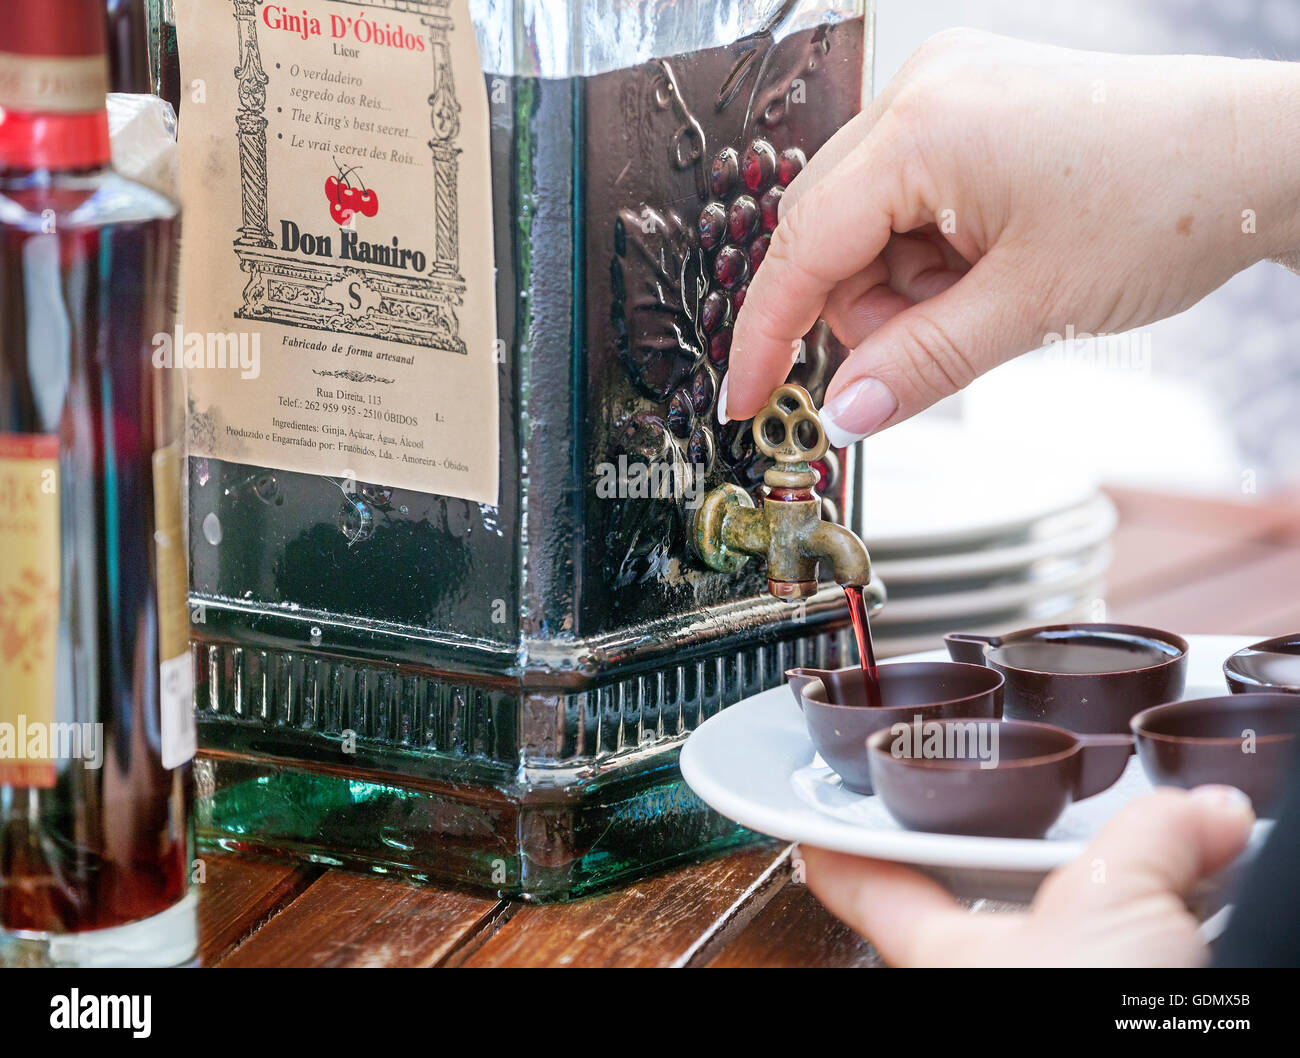 Licor de café servido en tazas de chocolate, una especialidad del lugar, Óbidos, distrito de Leiria, Portugal, Europa, viajes Foto de stock